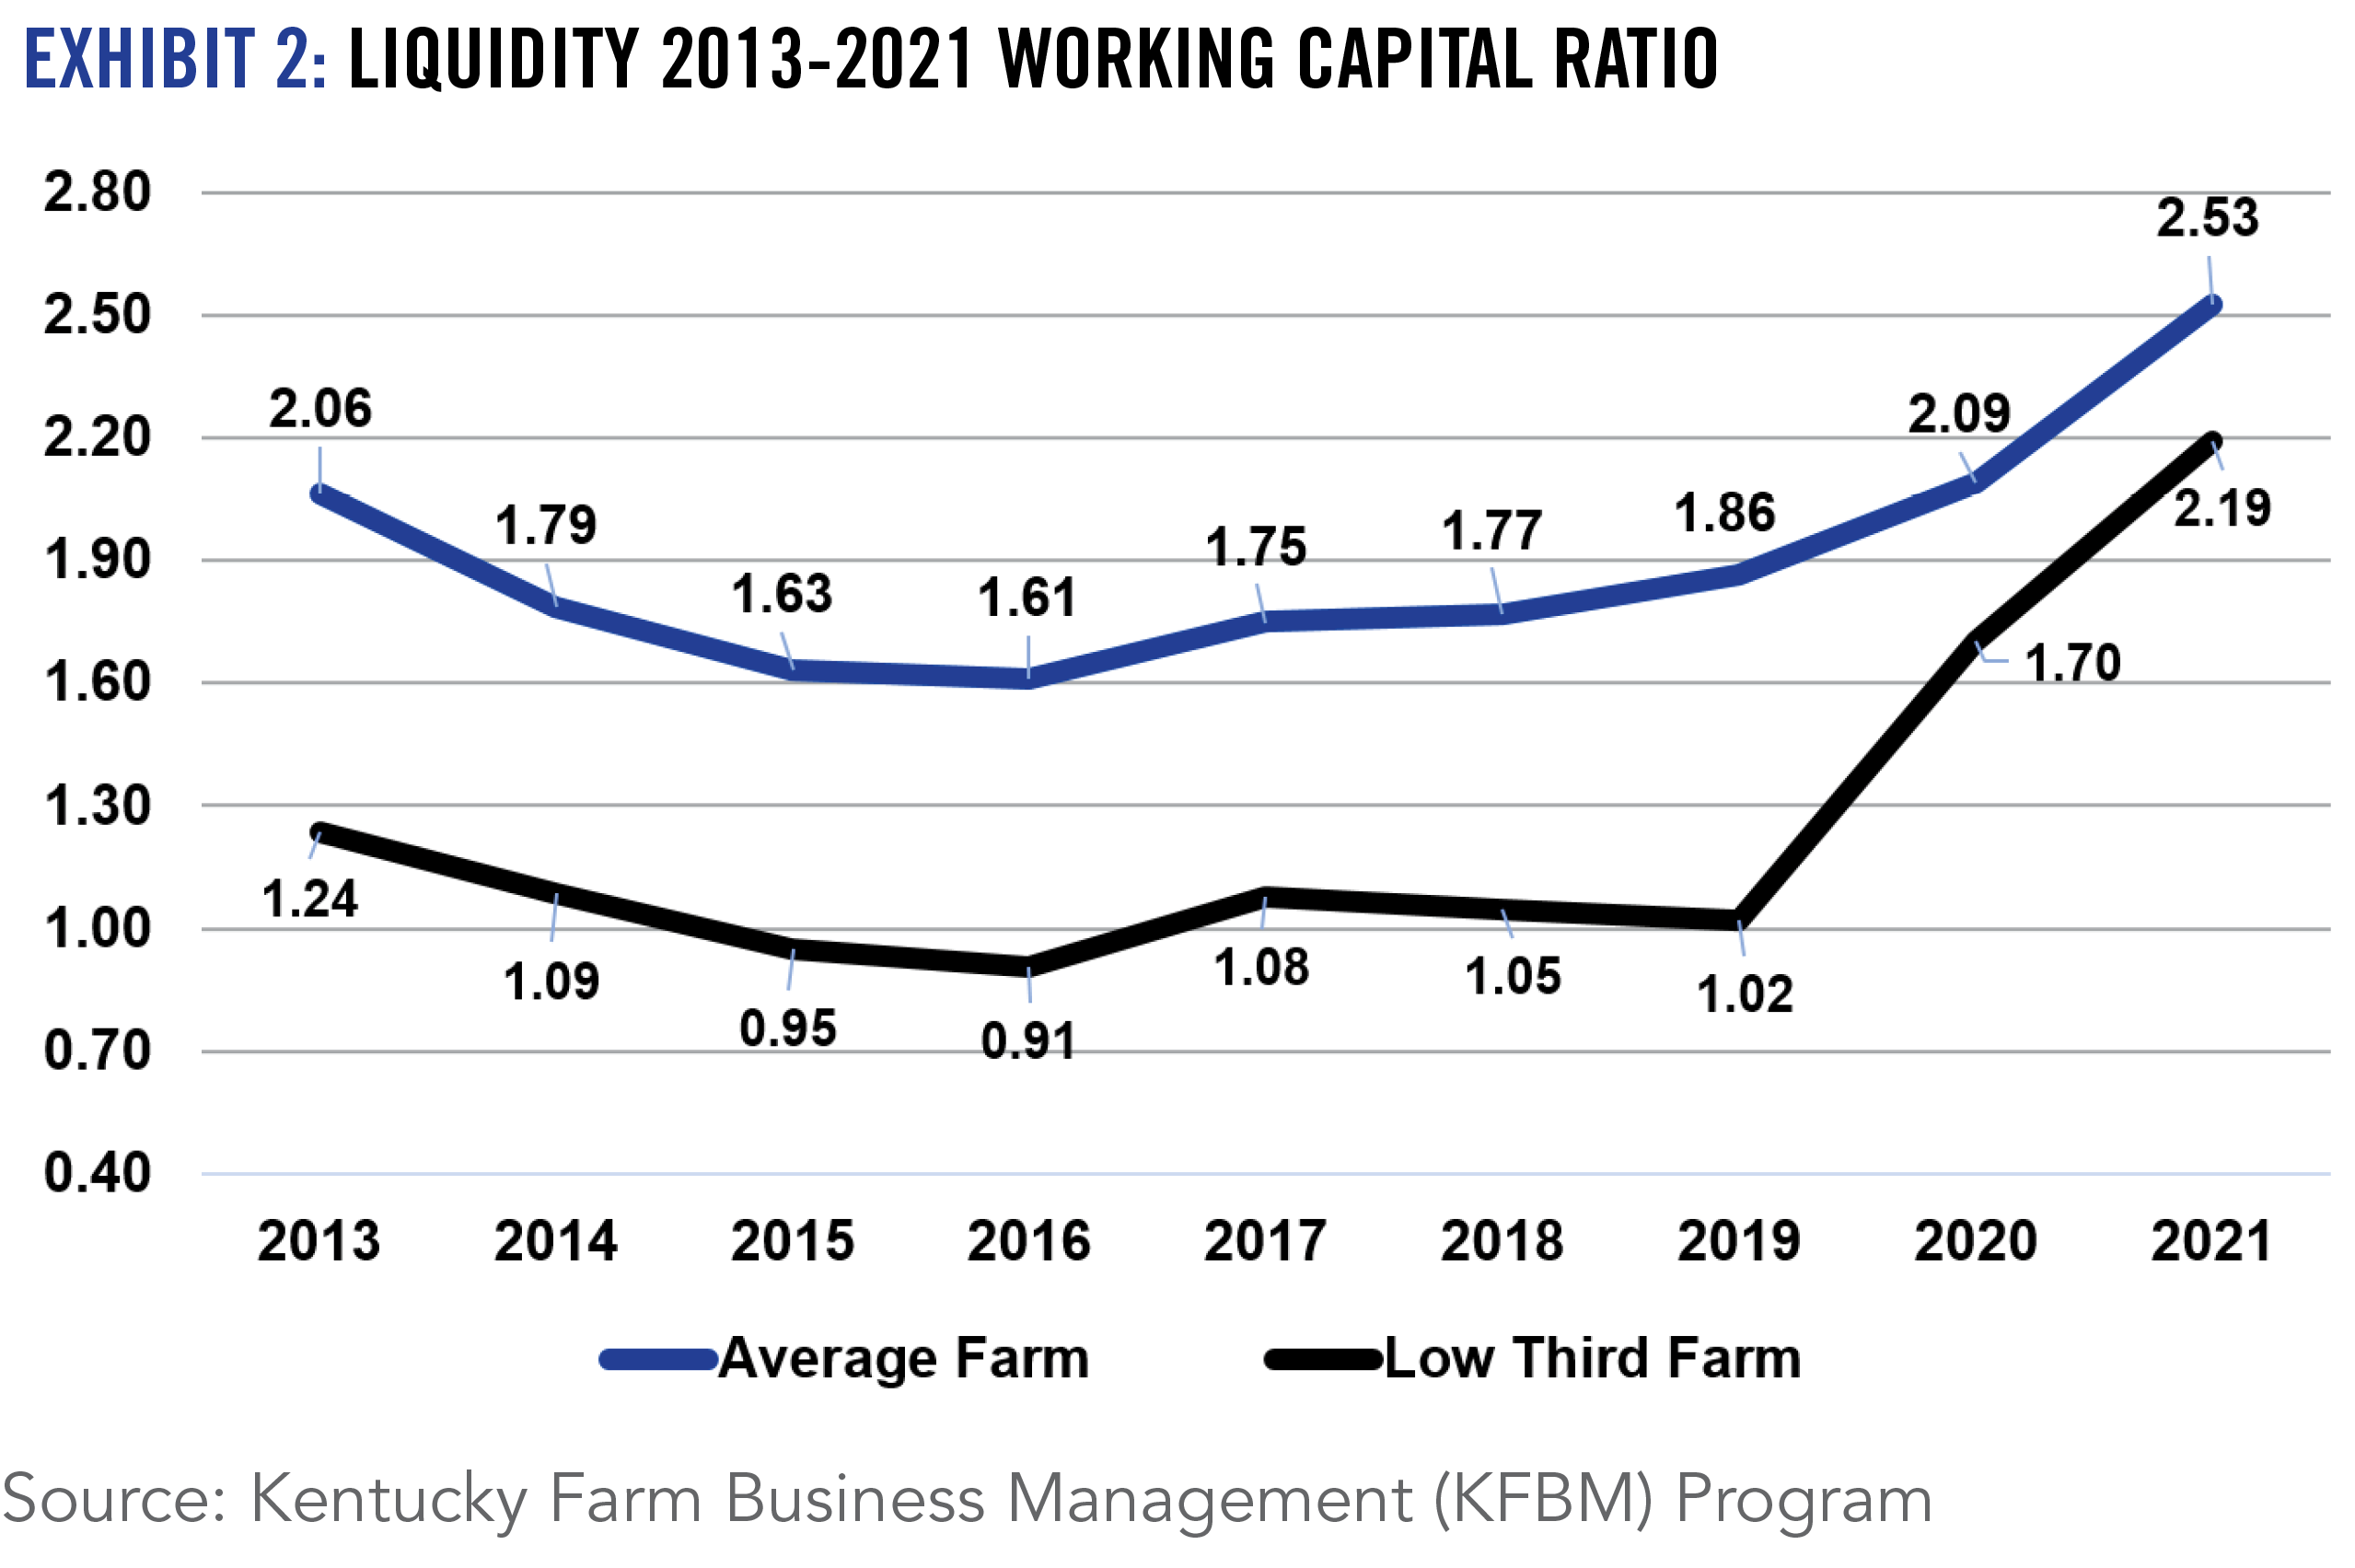 EXHIBIT 2: LIQUIDITY 2013-2021 WORKING CAPITAL RATIO